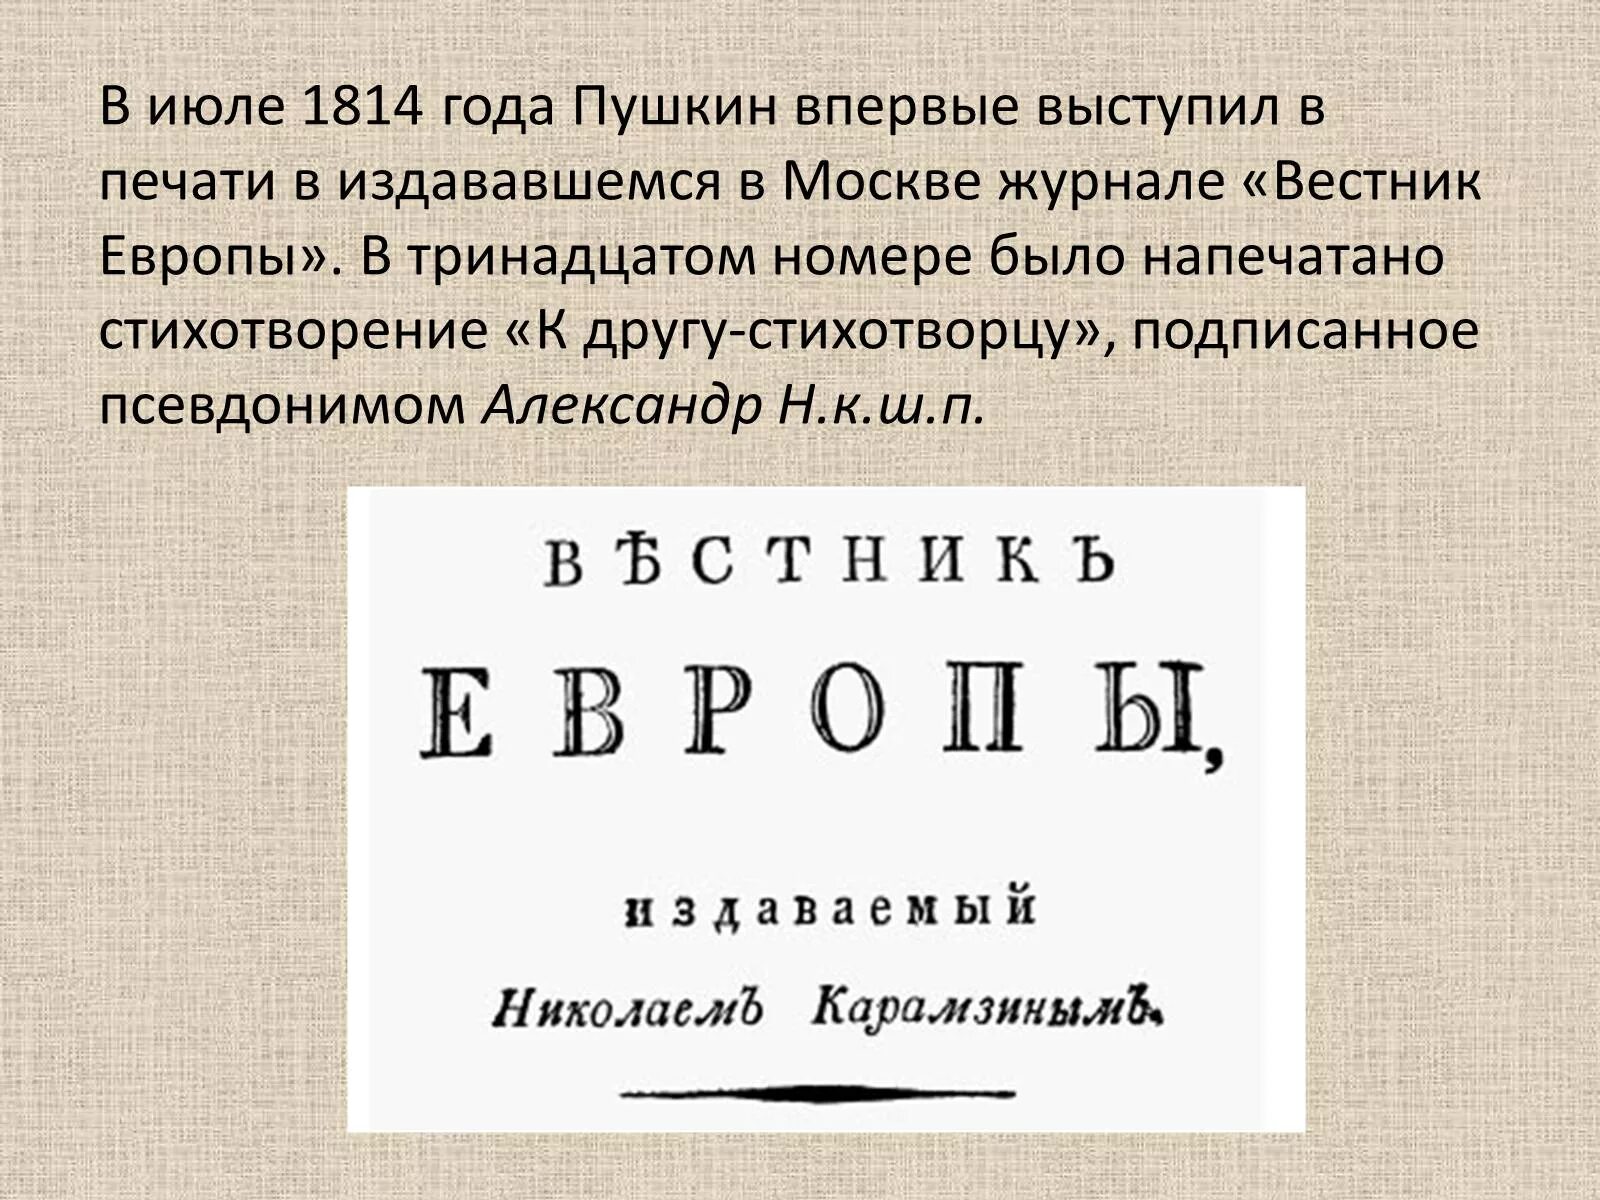 В году было опубликовано произведение. Вестник Европы 1814 год Пушкин. К другу стихотворцу Пушкин в журнале Вестник Европы. К другу стихотворцу 1814 год. Журнал Вестник Европы 1814 год.